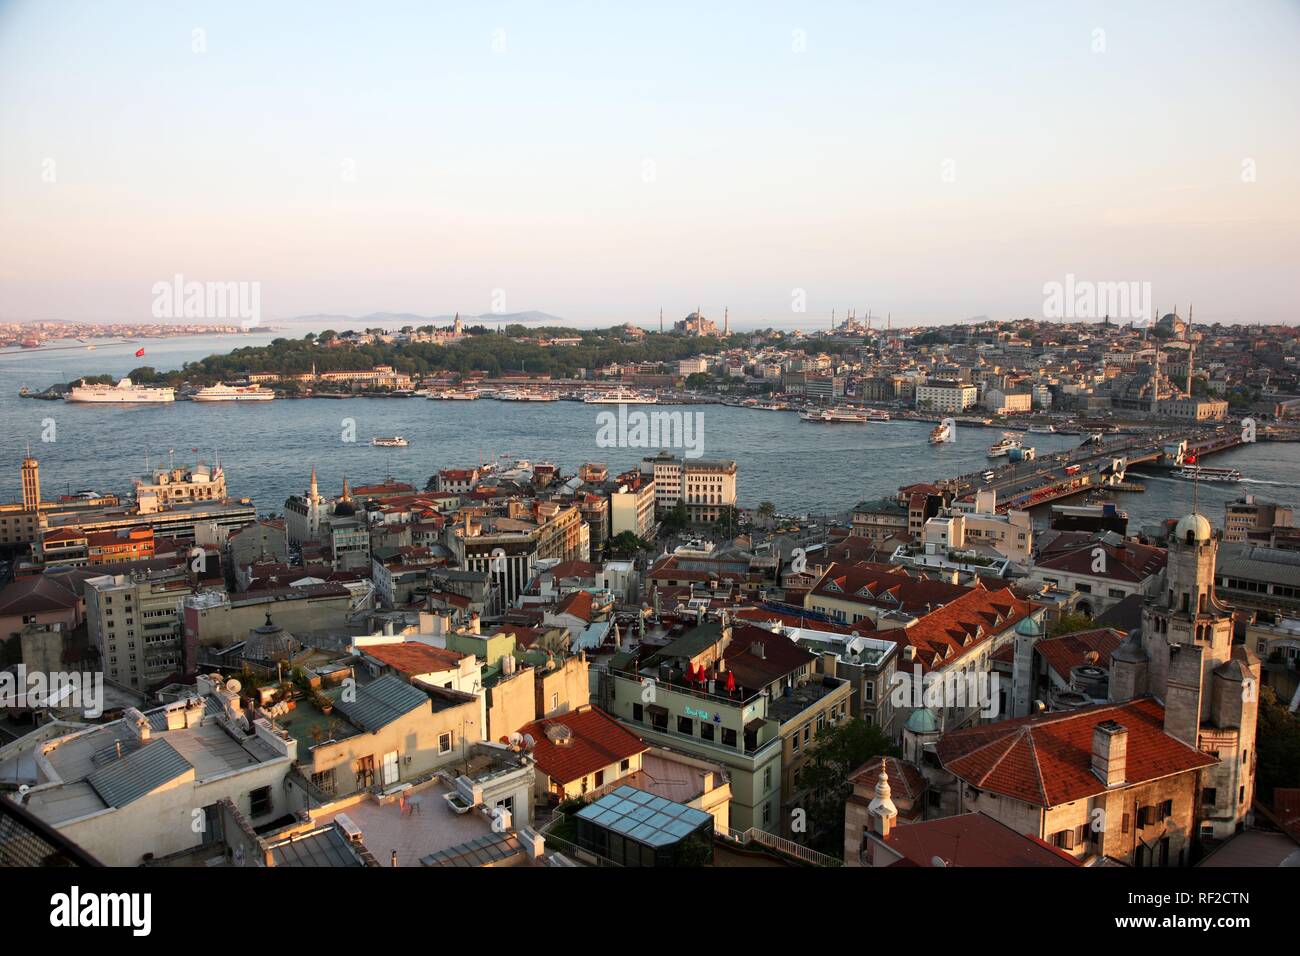 Vista attraverso il quartiere Eminoenue con il Galata Bridge spanning the Golden Horn e delle moschee in distanza, Istanbul, Turchia Foto Stock